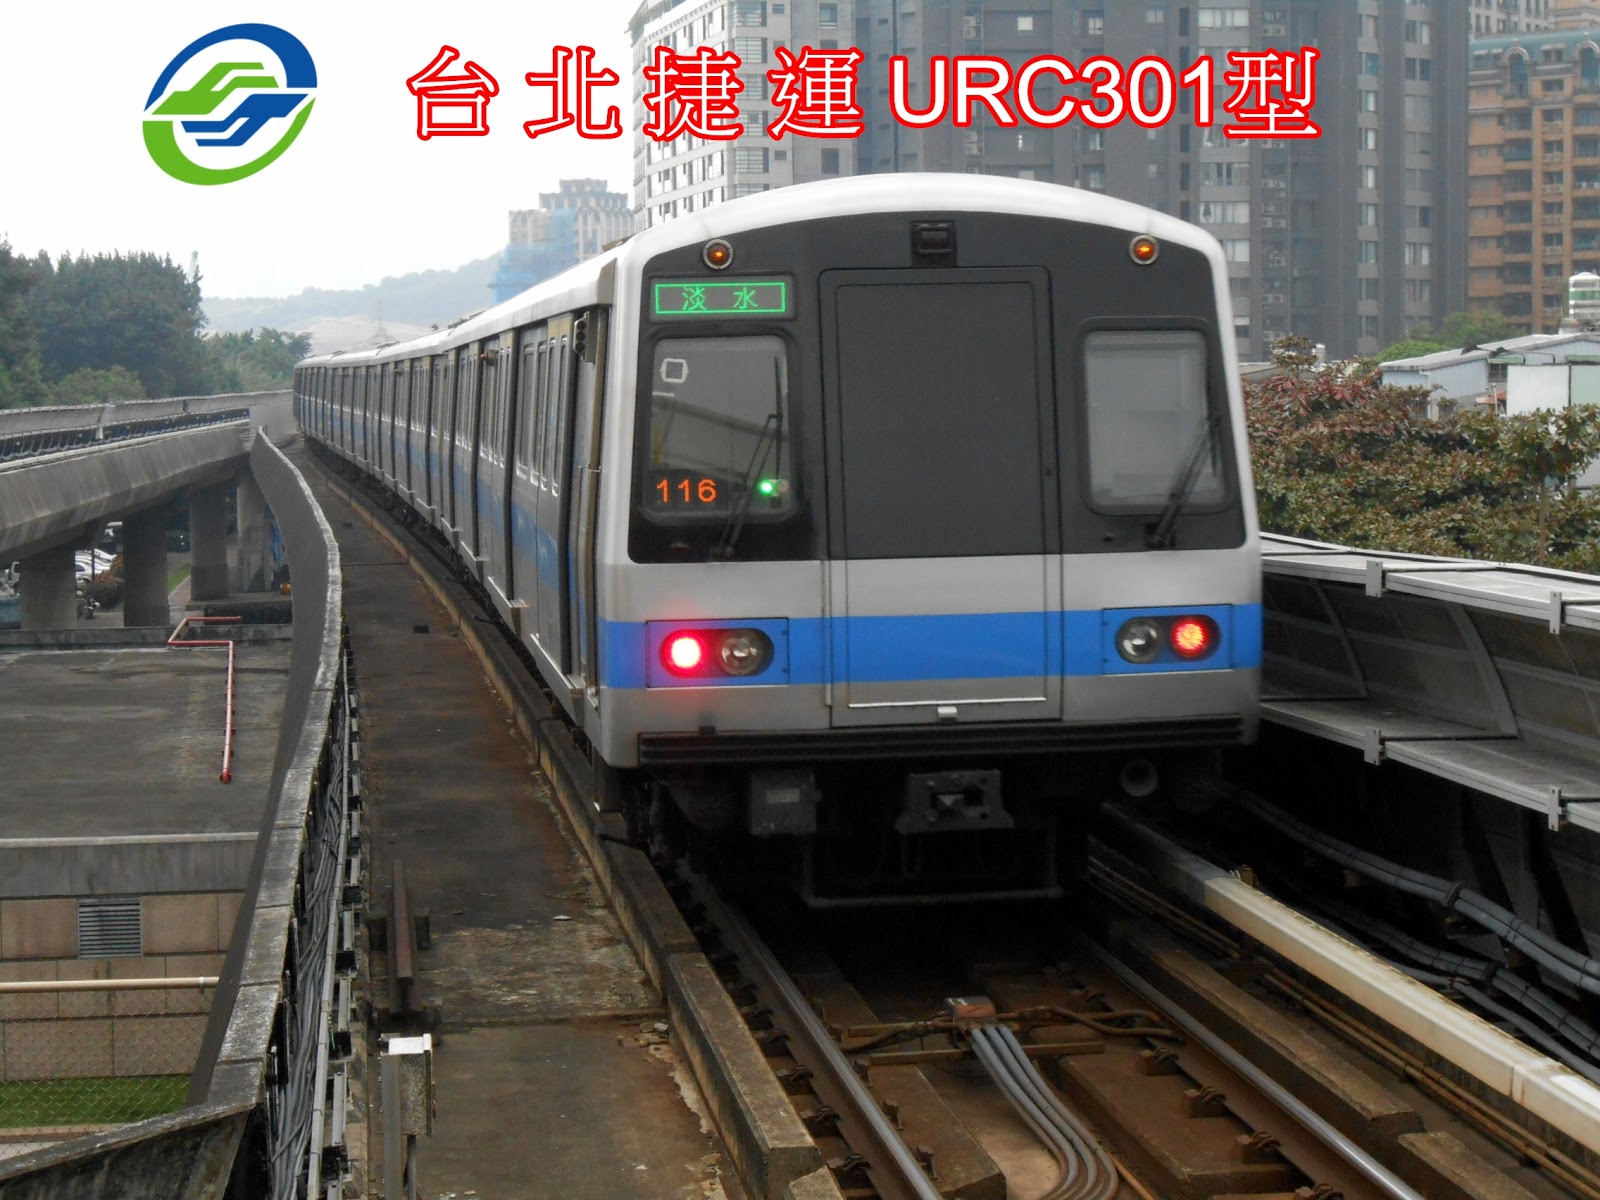 浩瑋 の 捷運小記: 台北捷運-URC301型